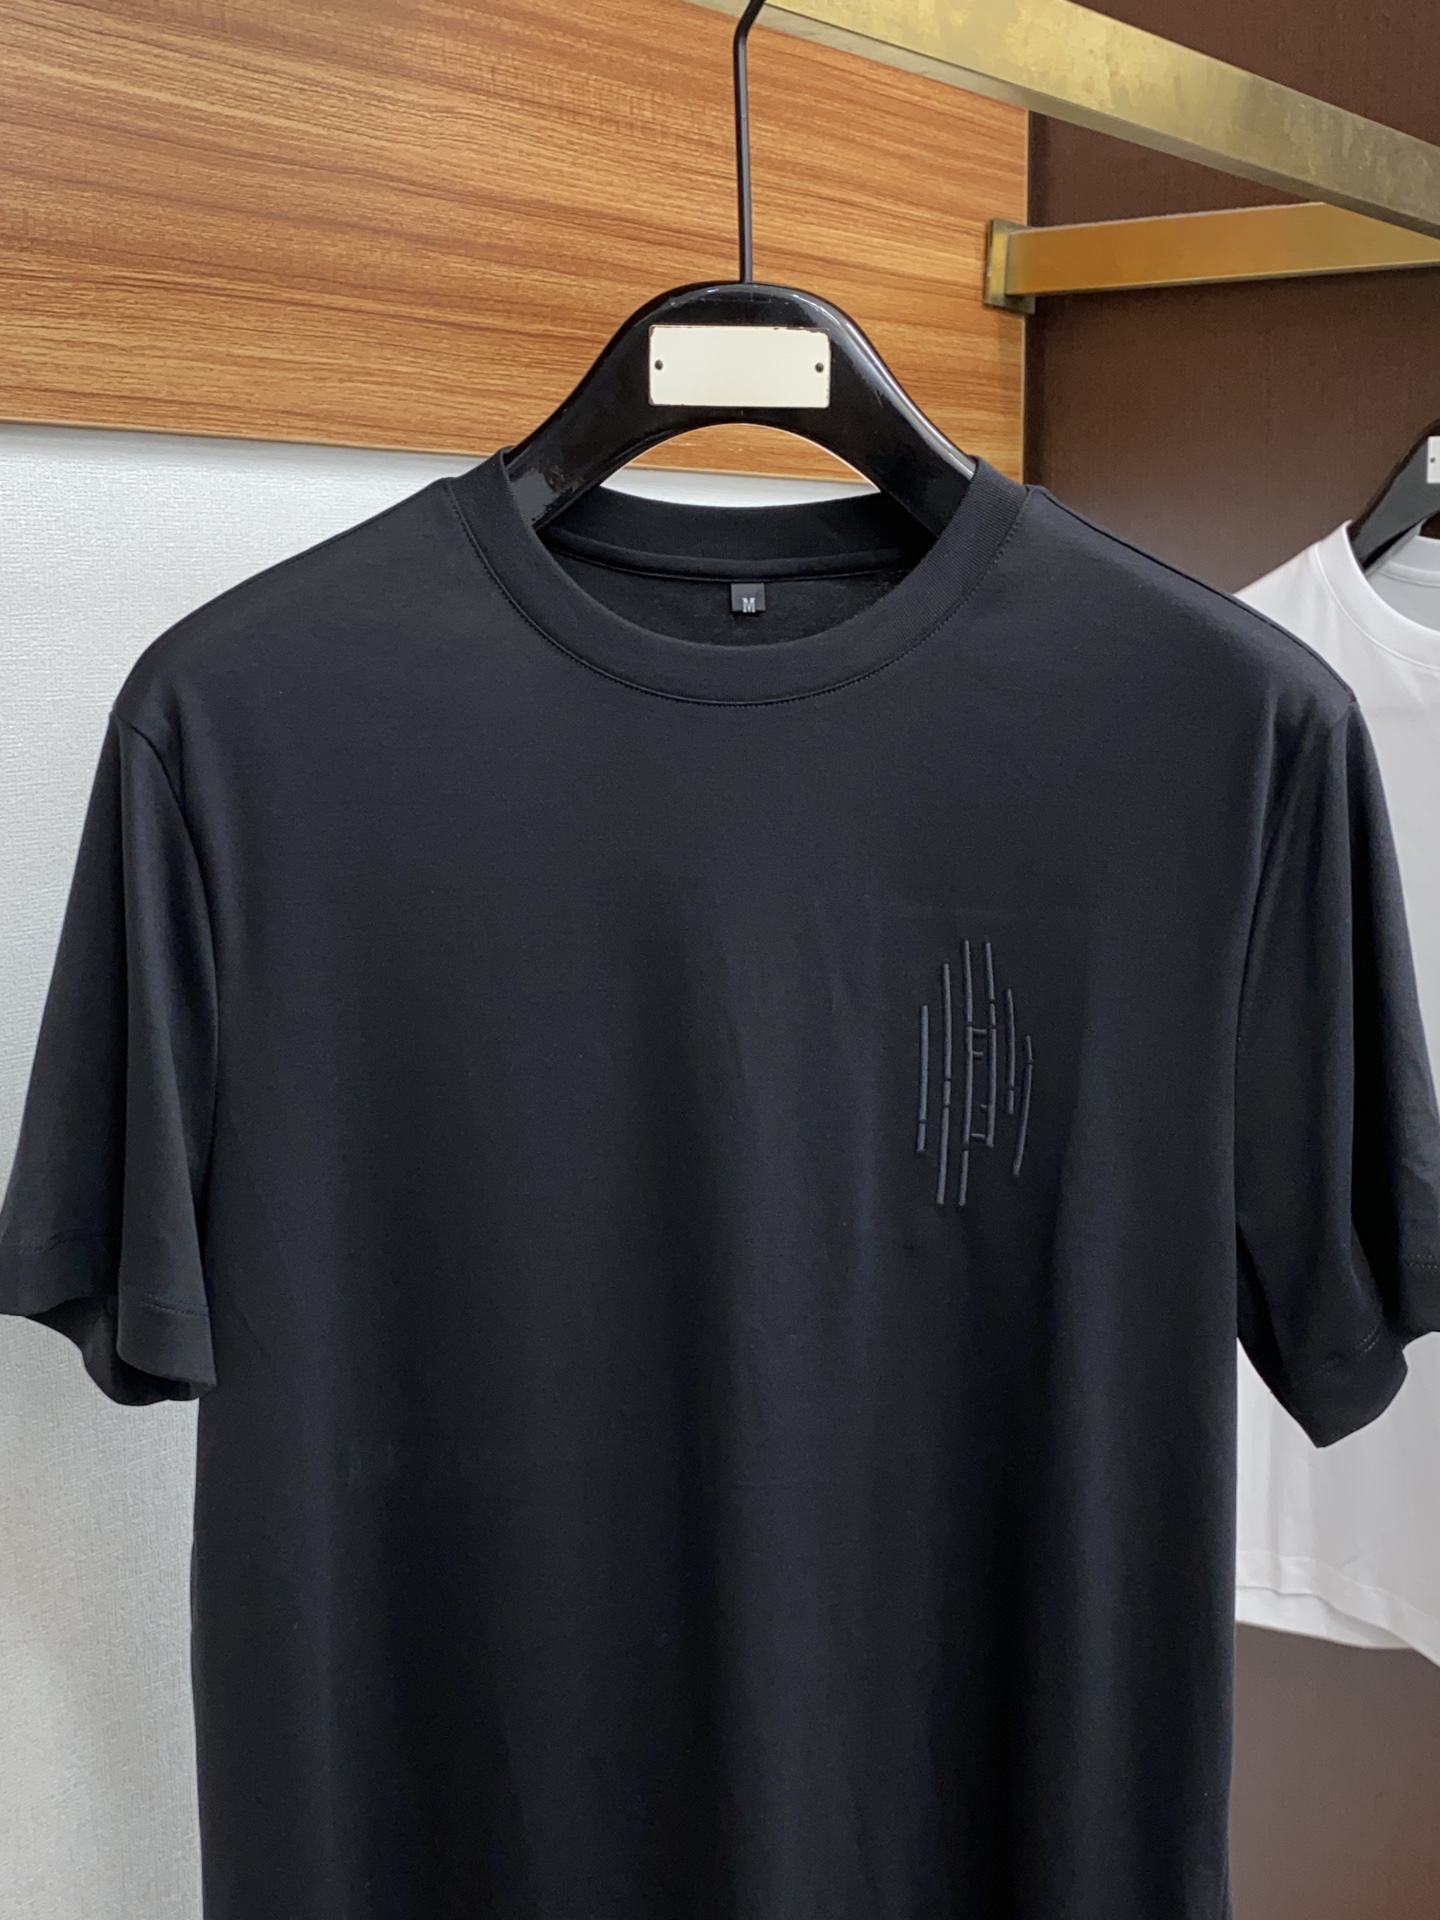 フェンディ メンズ t シャツ偽物 トップス 綿100% プリント 短袖 ゆったり シンプル 柔らかい メンズ ブラック_2